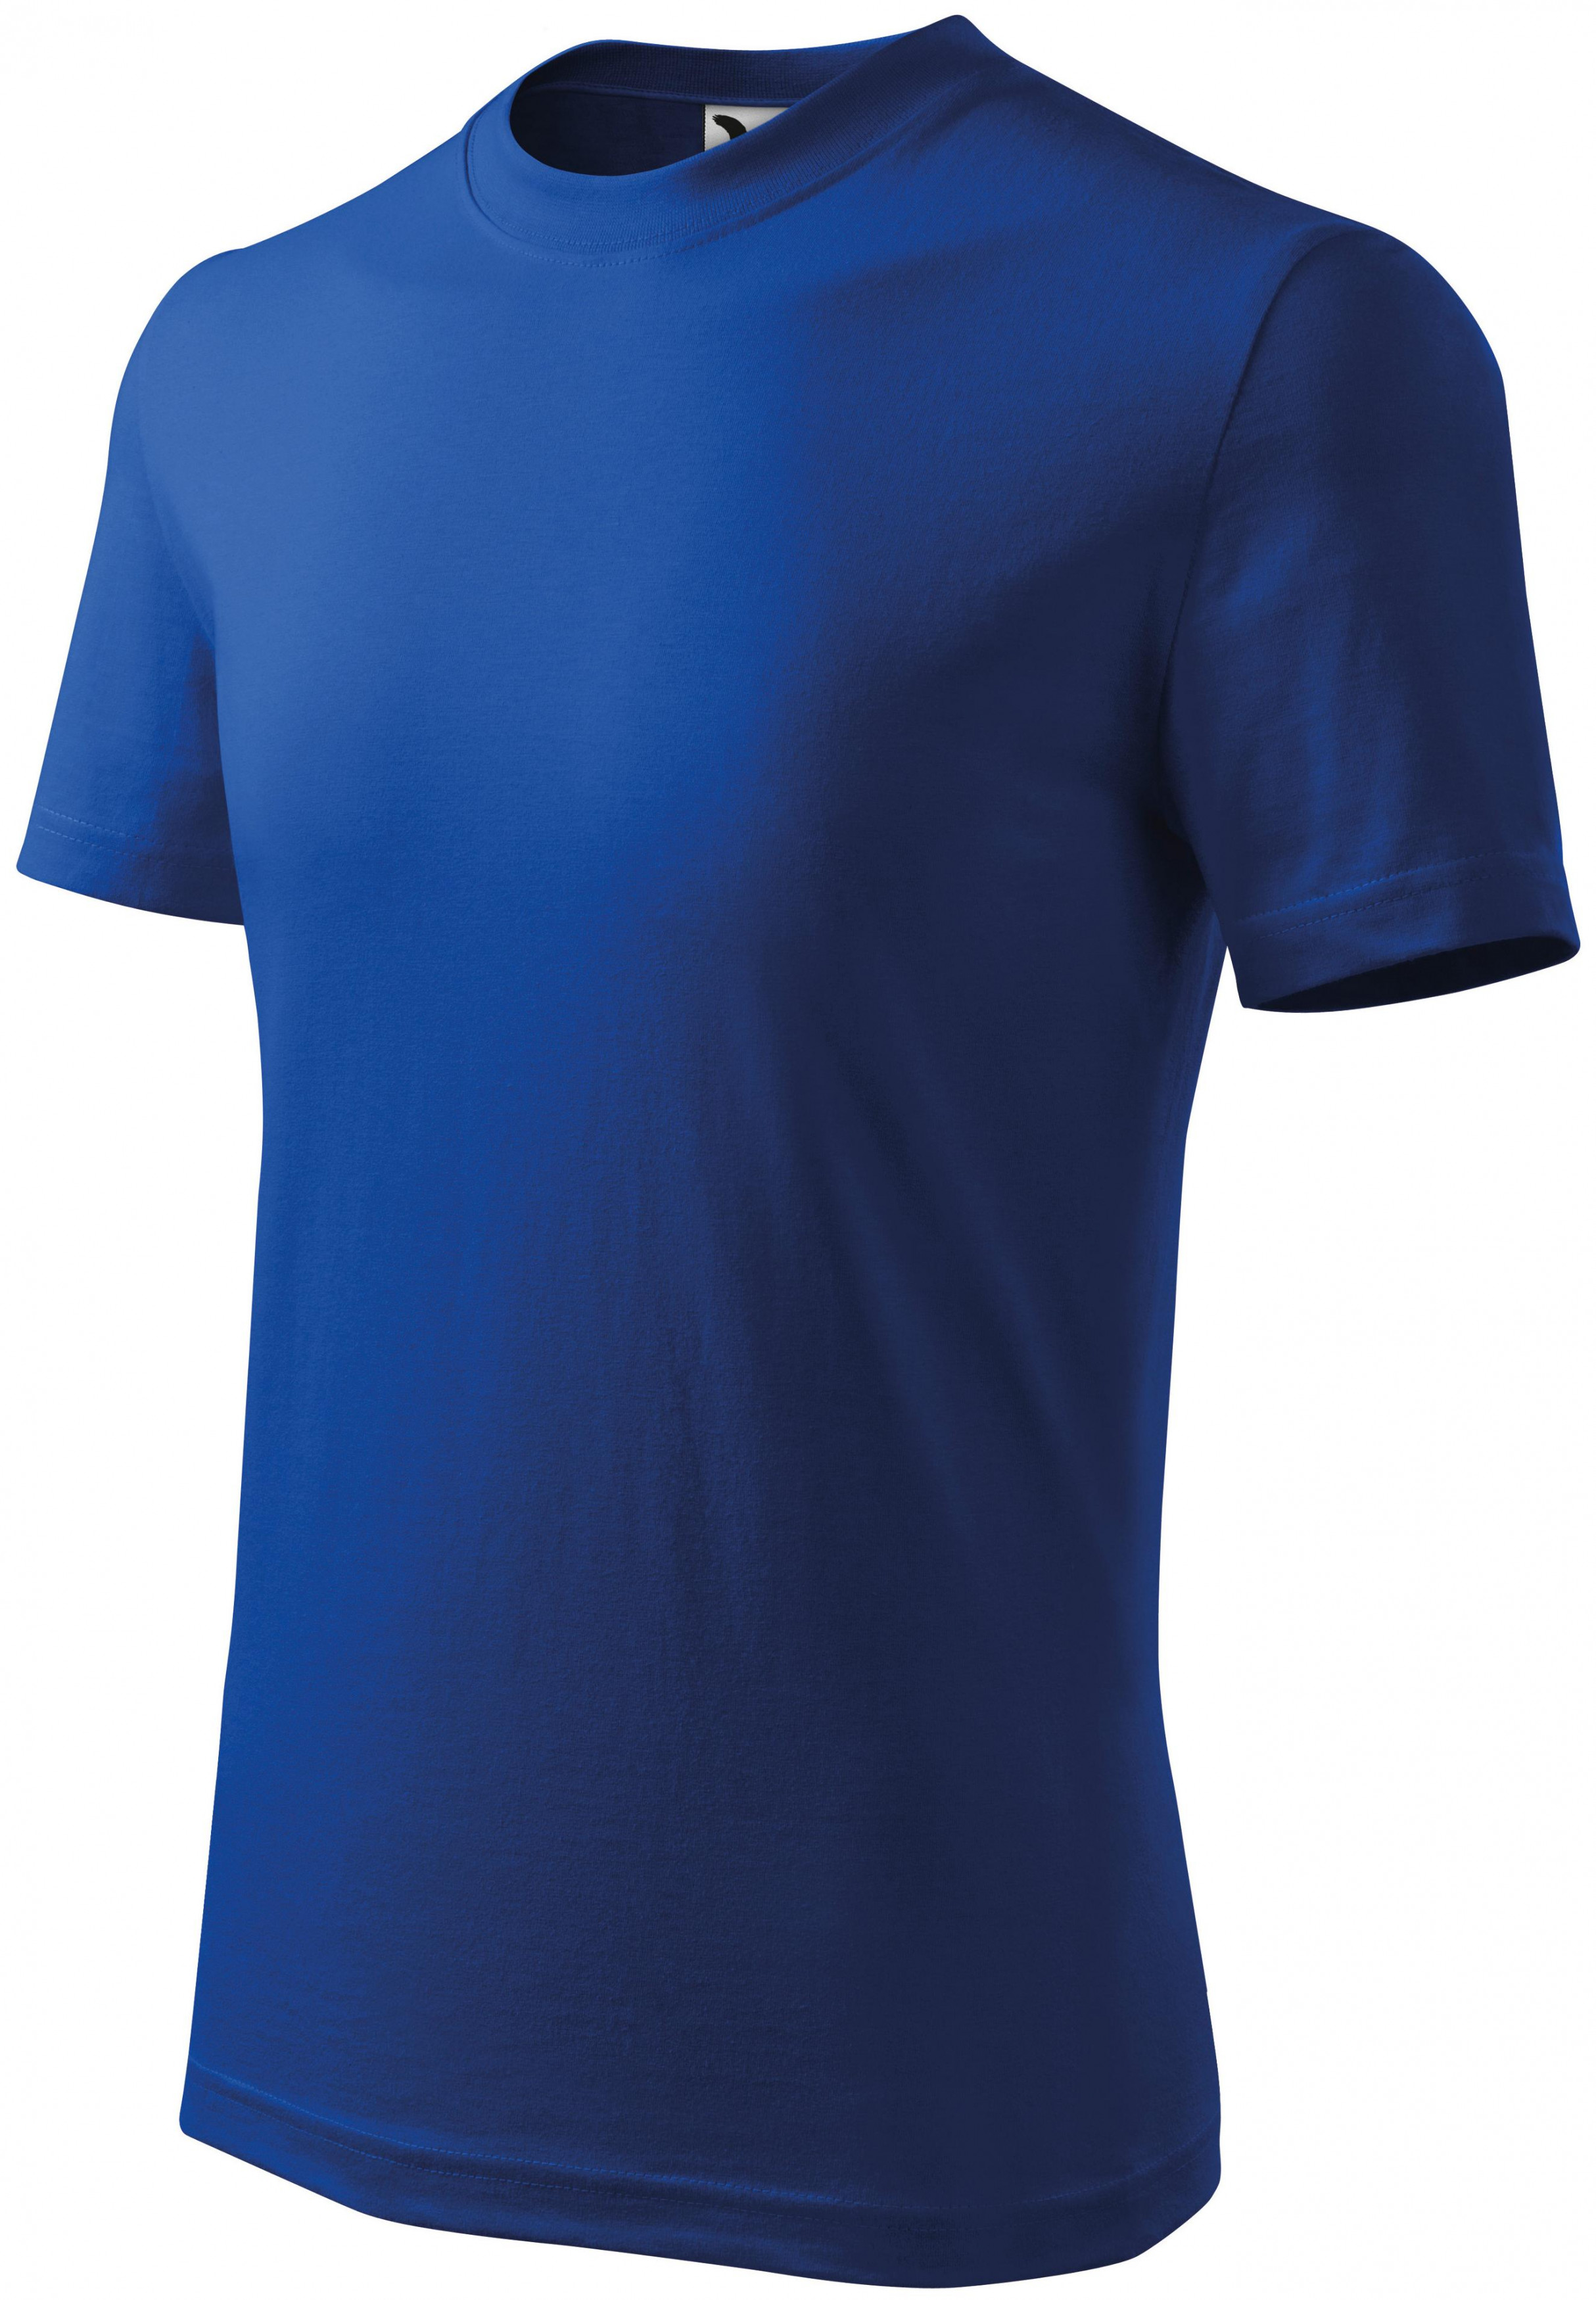 Detské tričko jednoduché, kráľovská modrá, 122cm / 6rokov